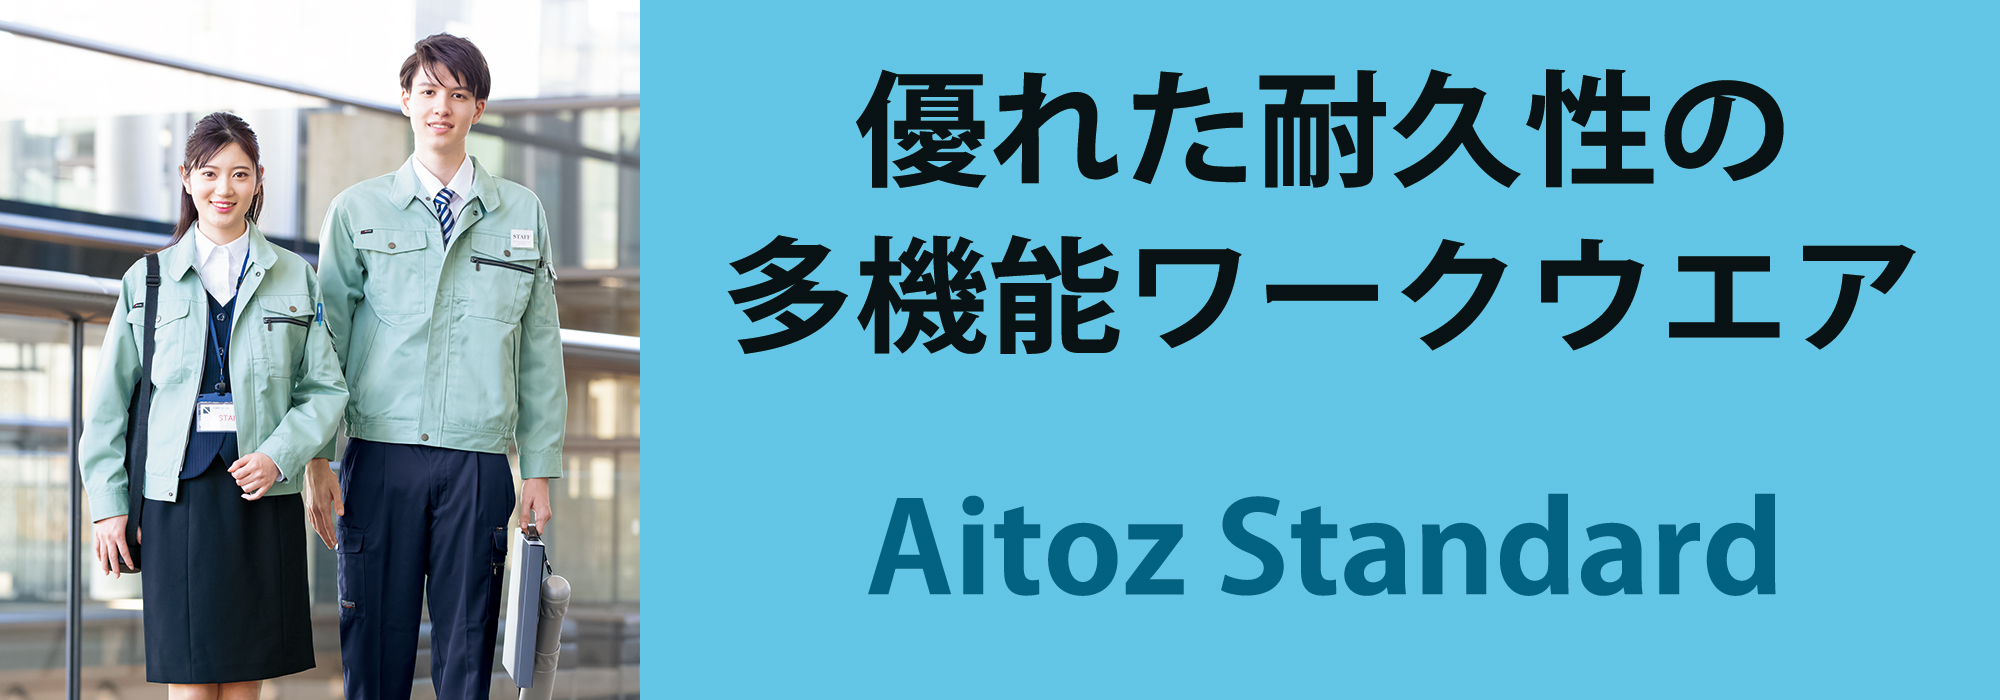 Aitoz Standard | アイトス 作業服・ユニフォーム・カタログ